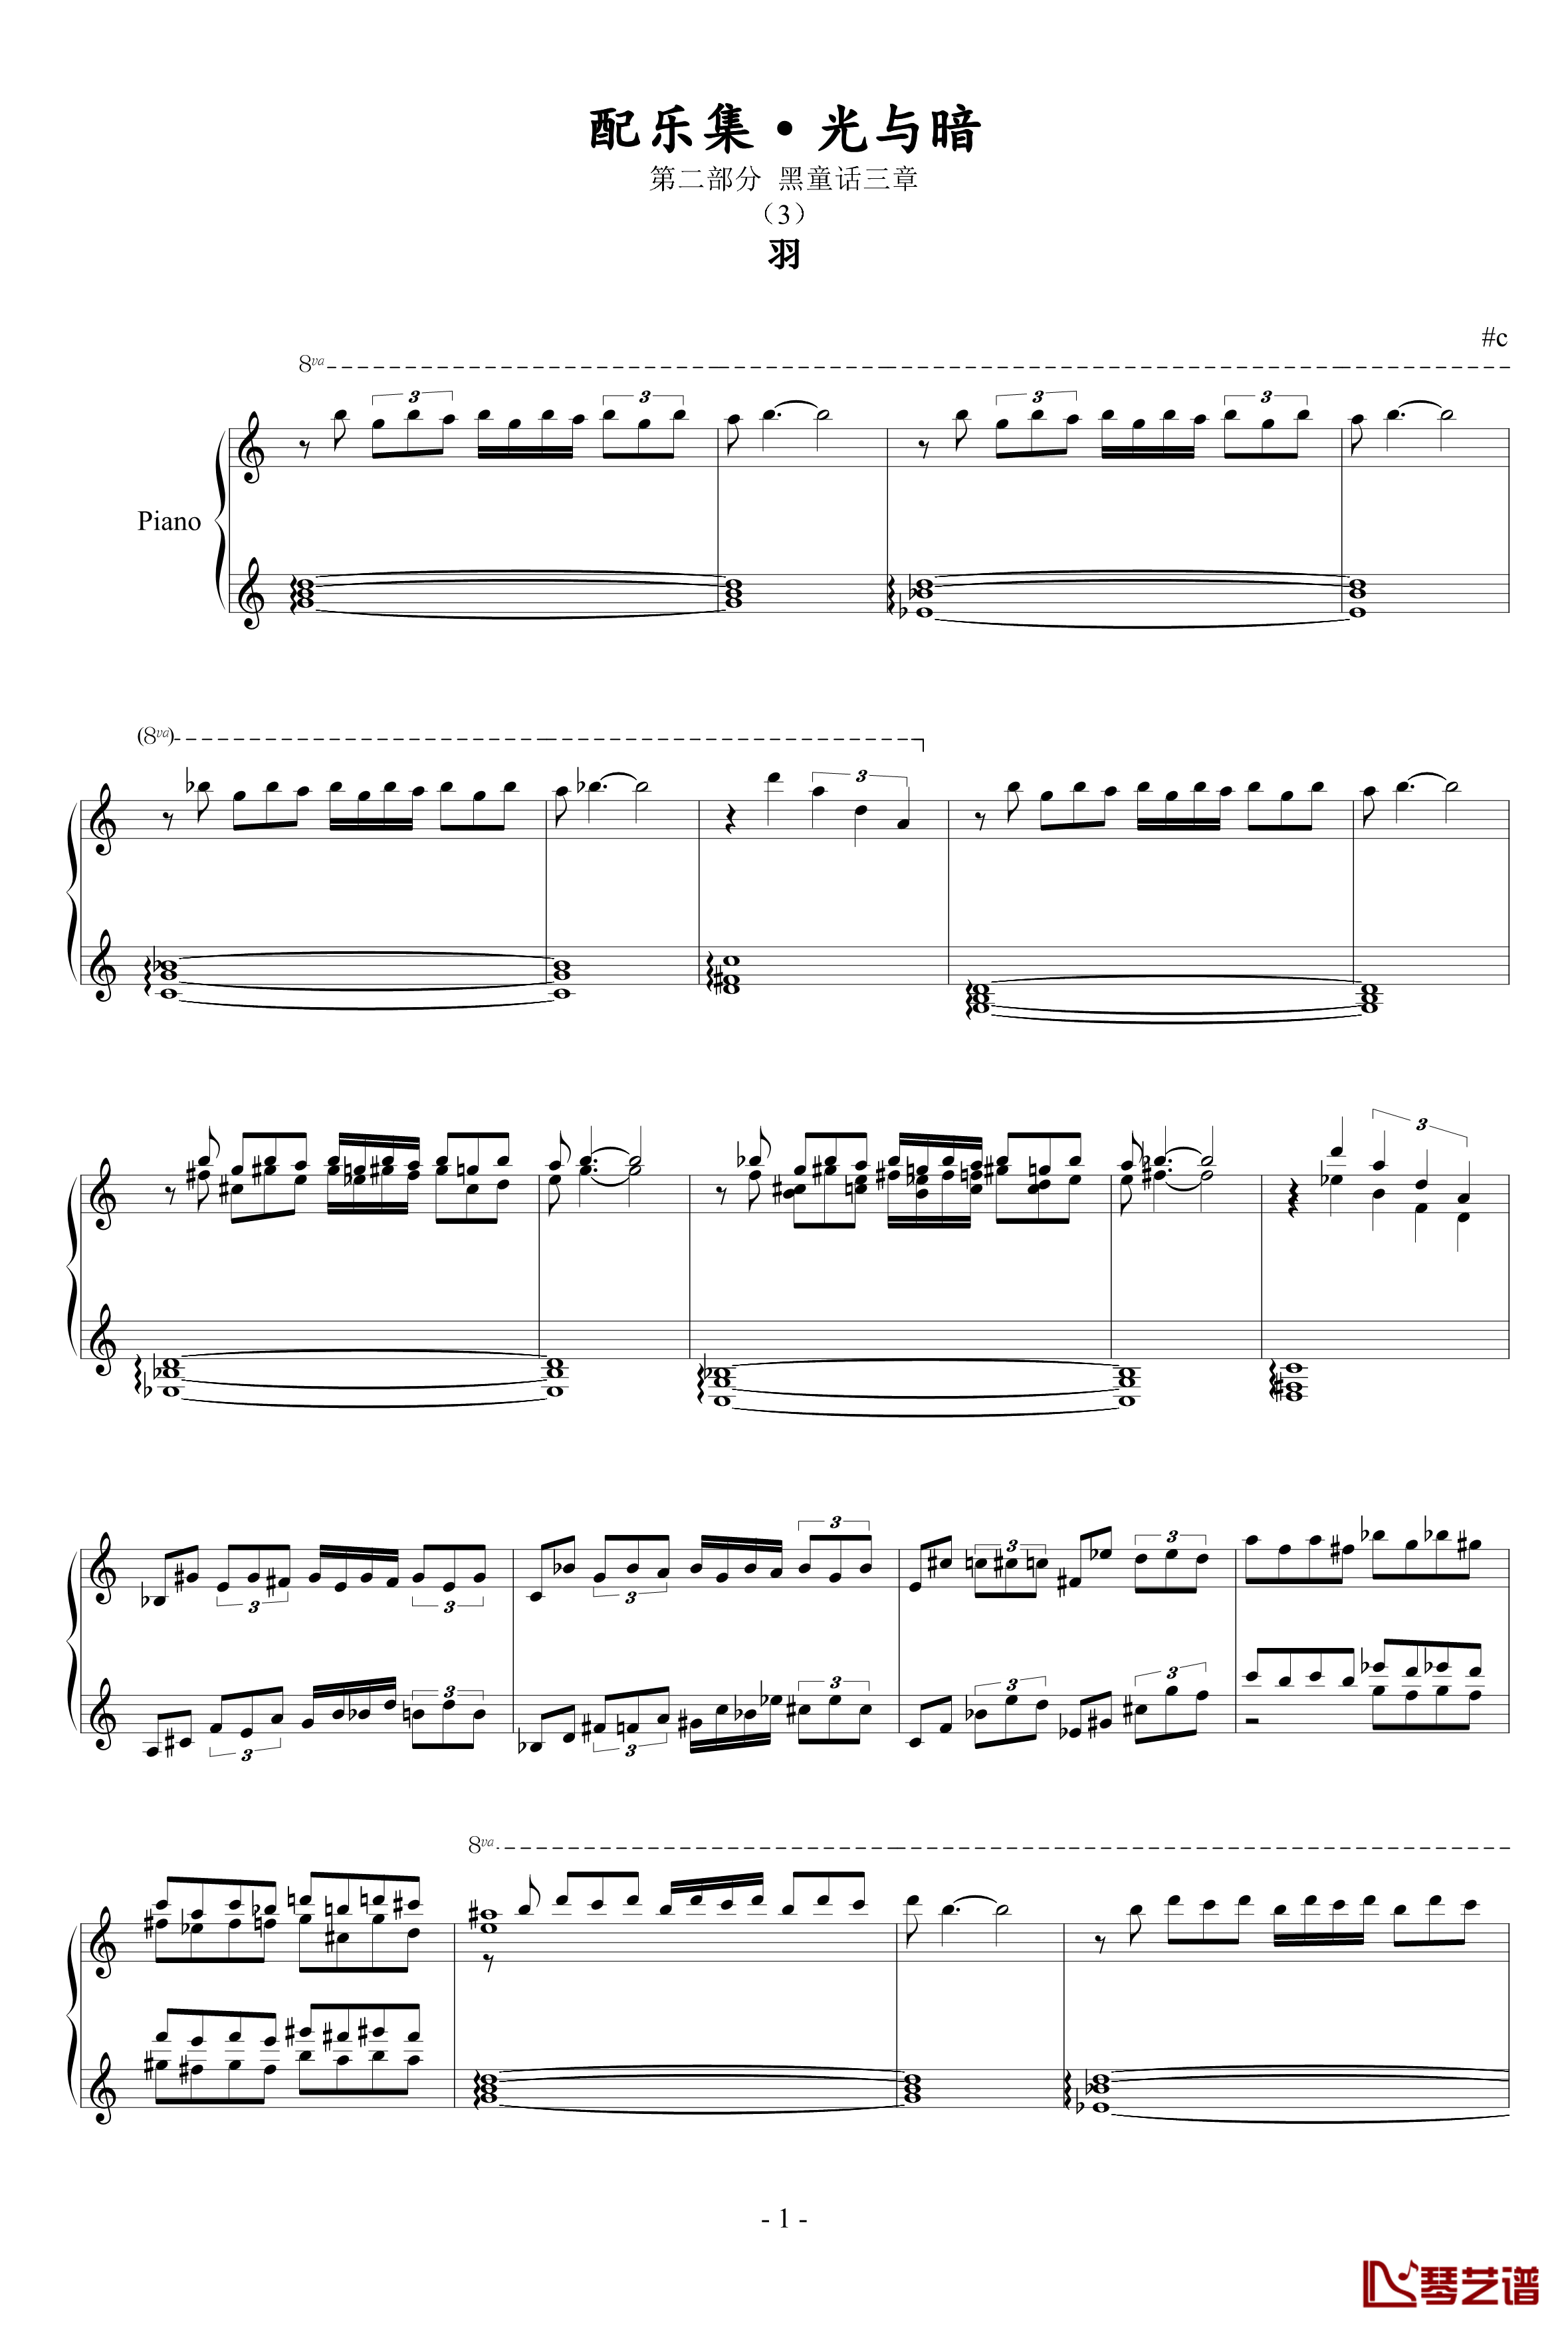 羽钢琴谱-升c小调1